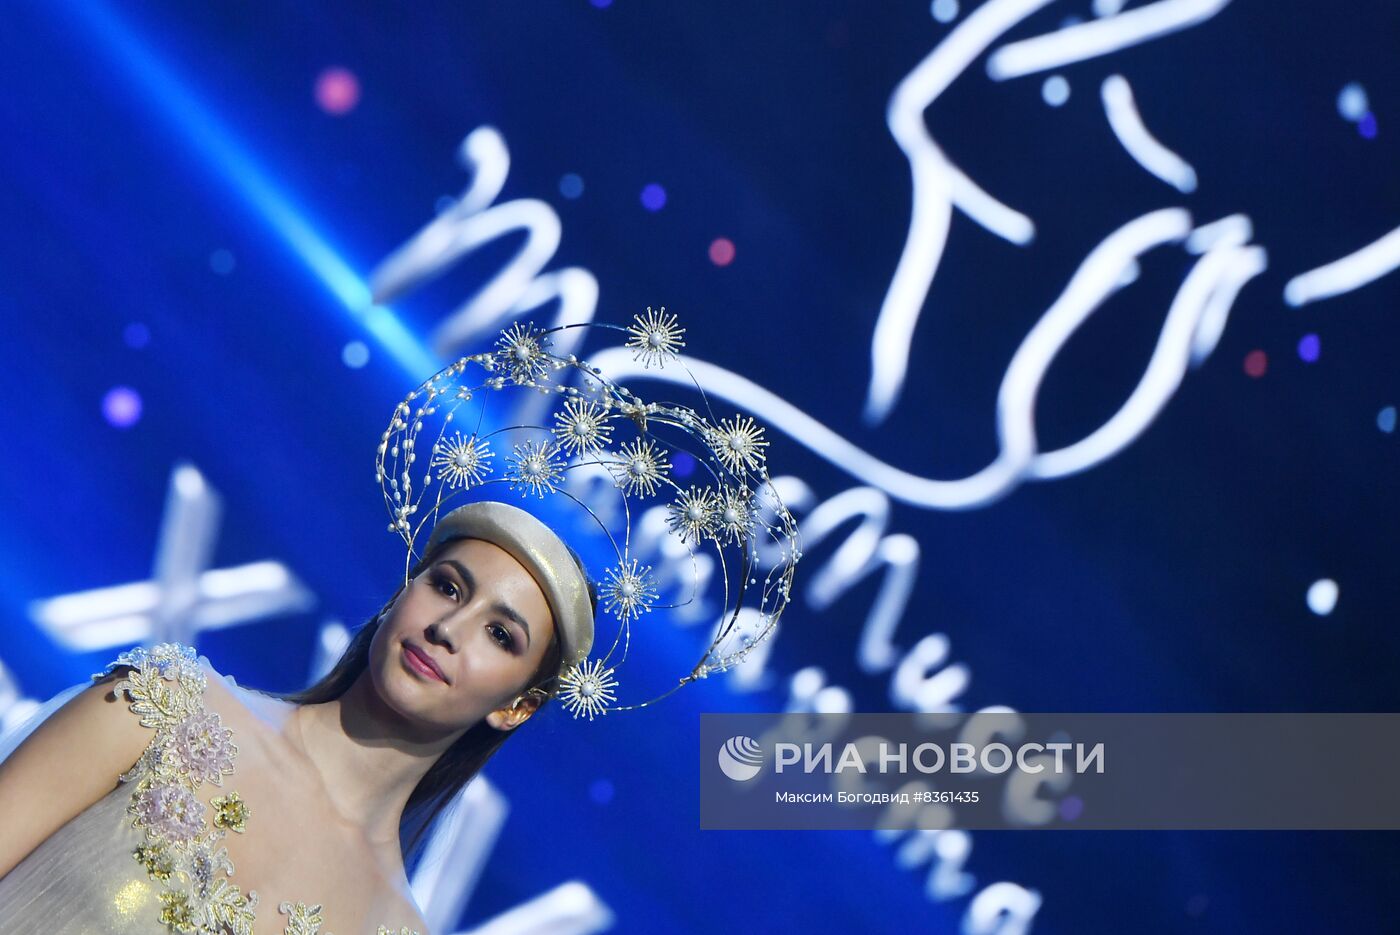 Конкурс красоты "Мисс Татарстан"